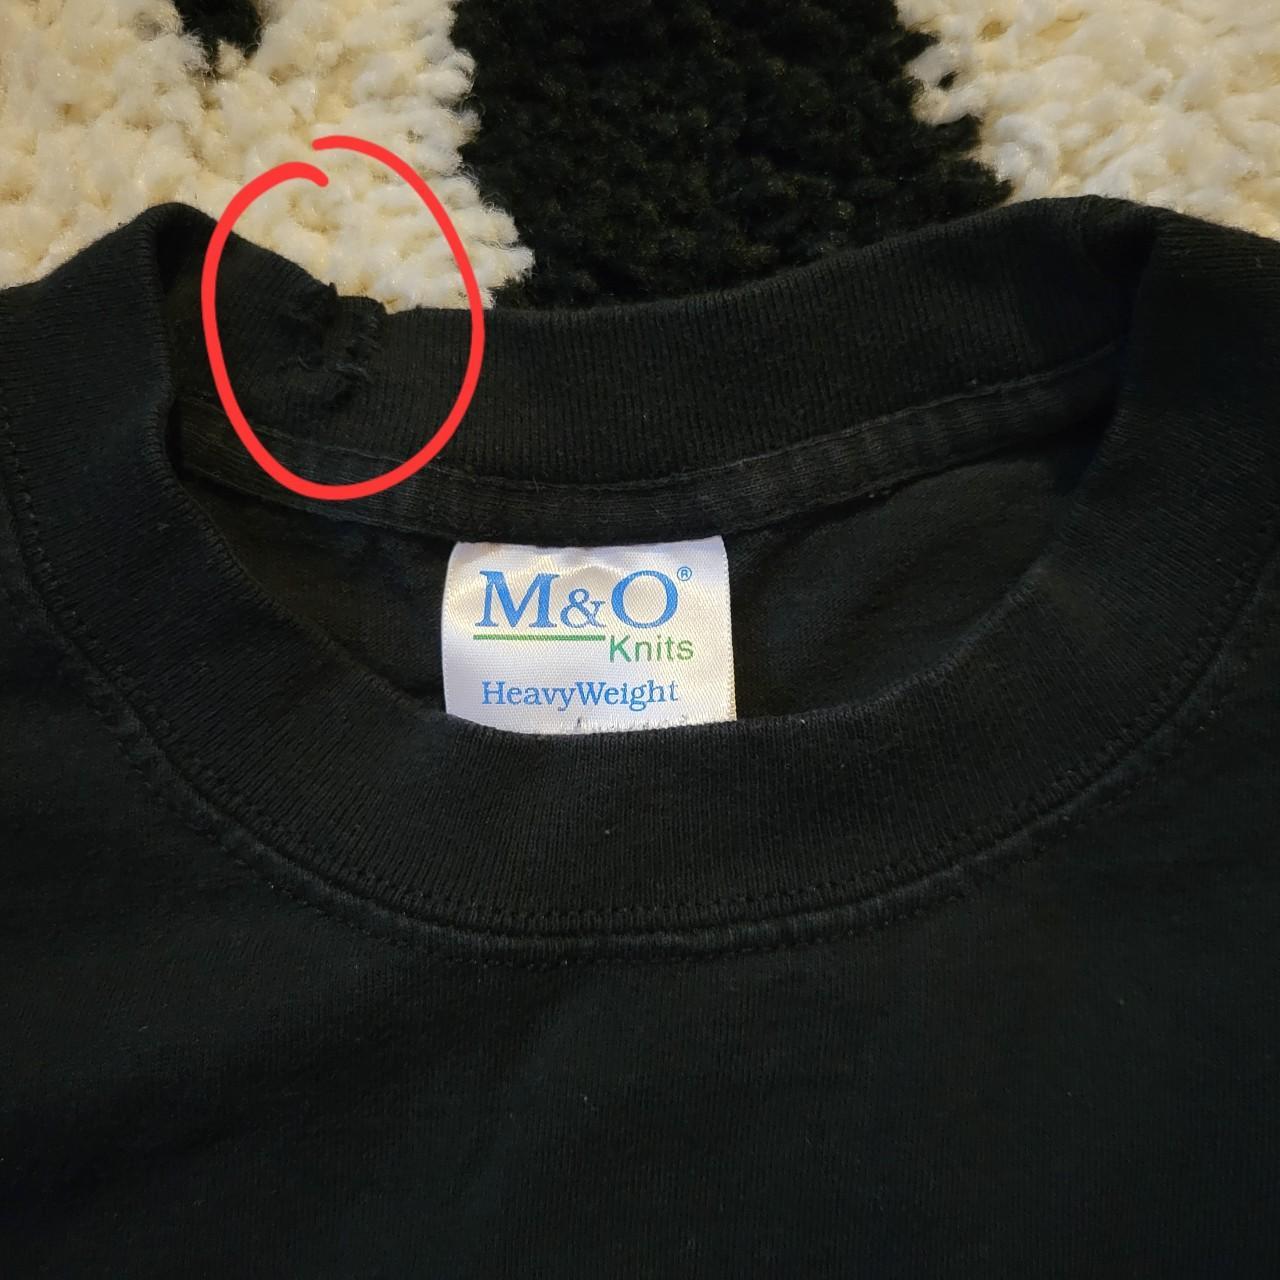 M&o knits 